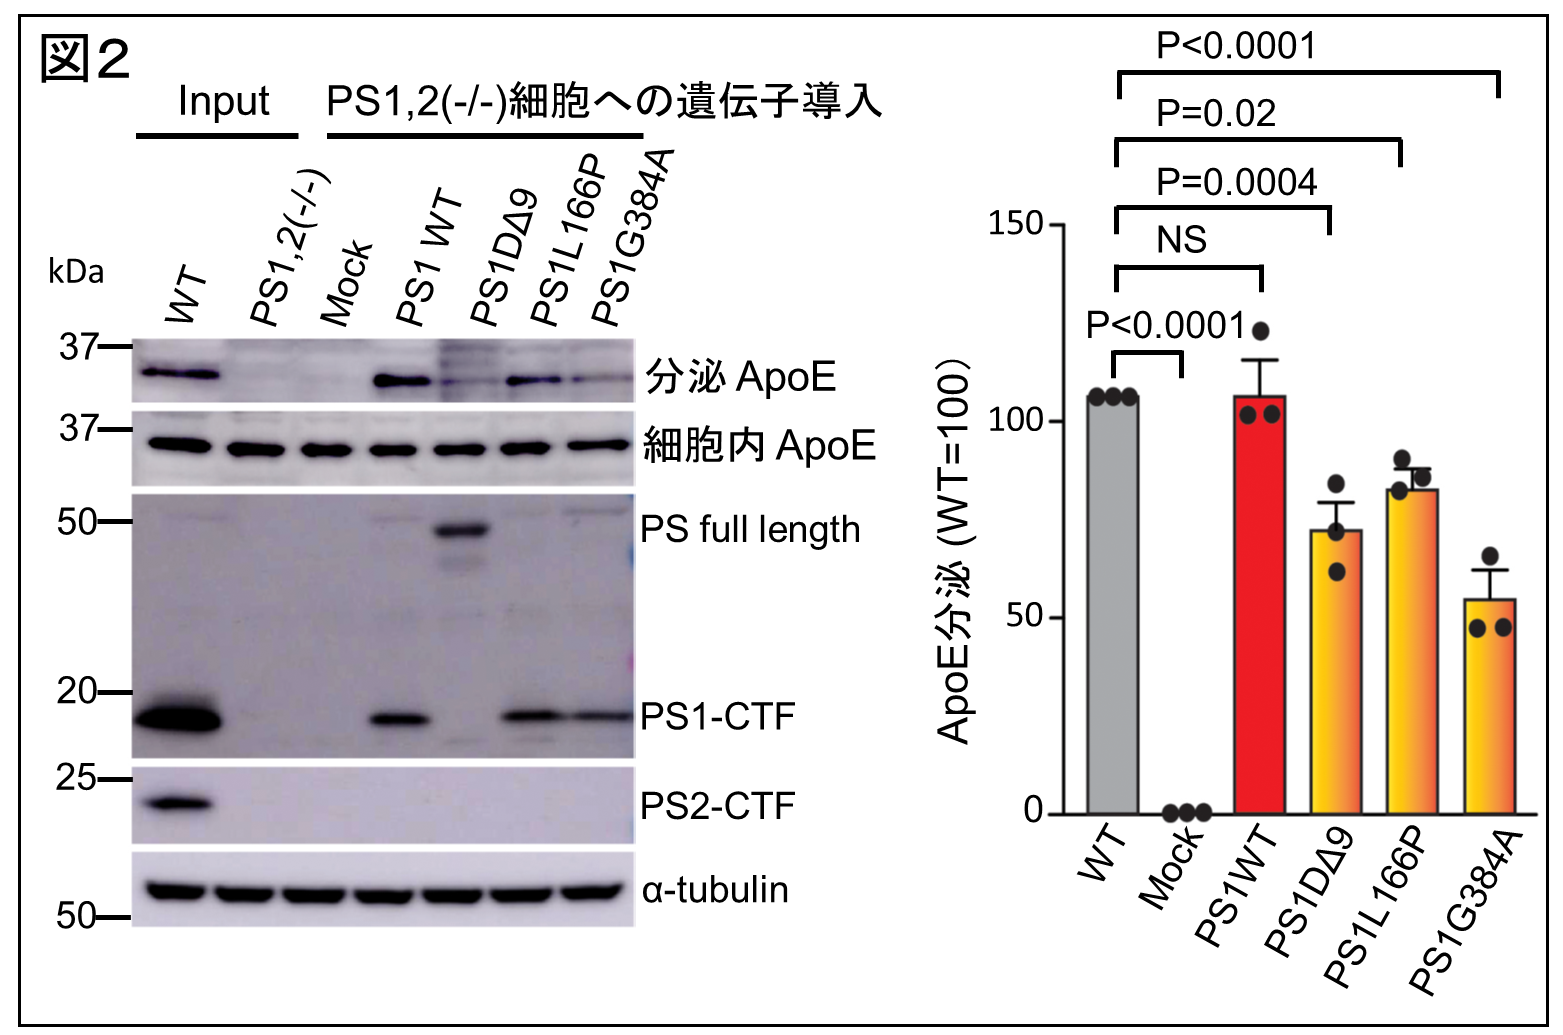 図２。ApoE分泌における変異型PS1の作用。PS1およびPS2欠損マウス胎児線維芽細胞に、野生型PS1、あるいは変異型PS1を導入した。野生型PS1と比べ、変異型PS1のApoE分泌促進効果が低下している。